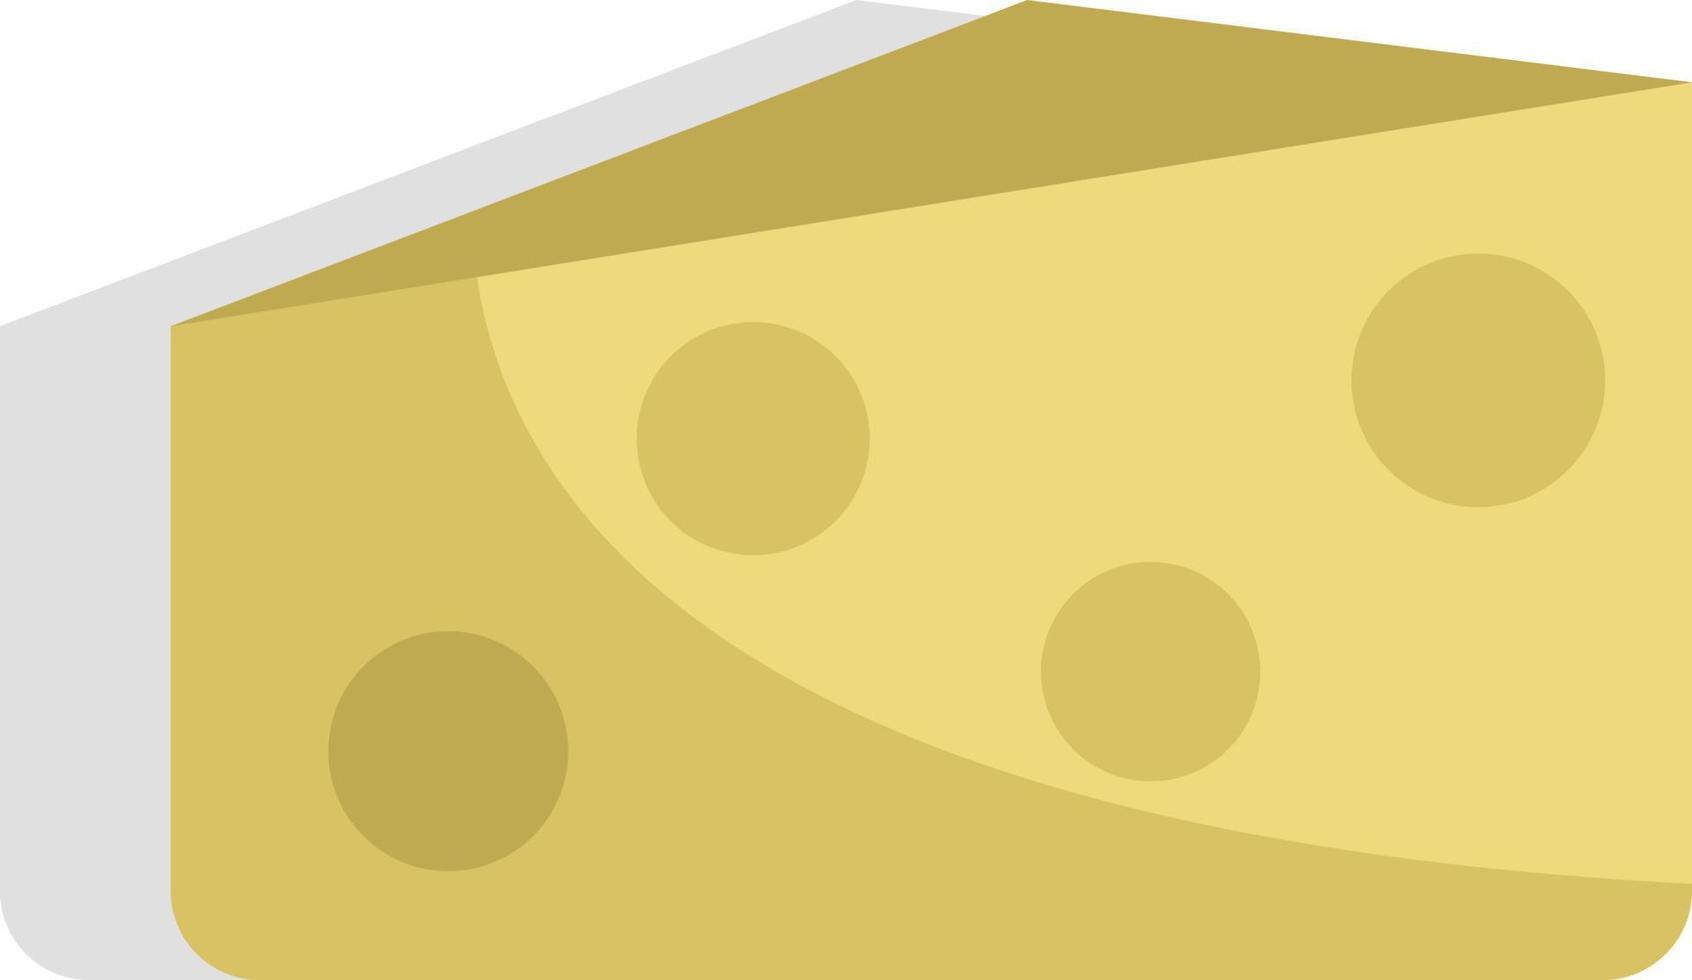 comida de queso, ilustración, vector sobre fondo blanco.